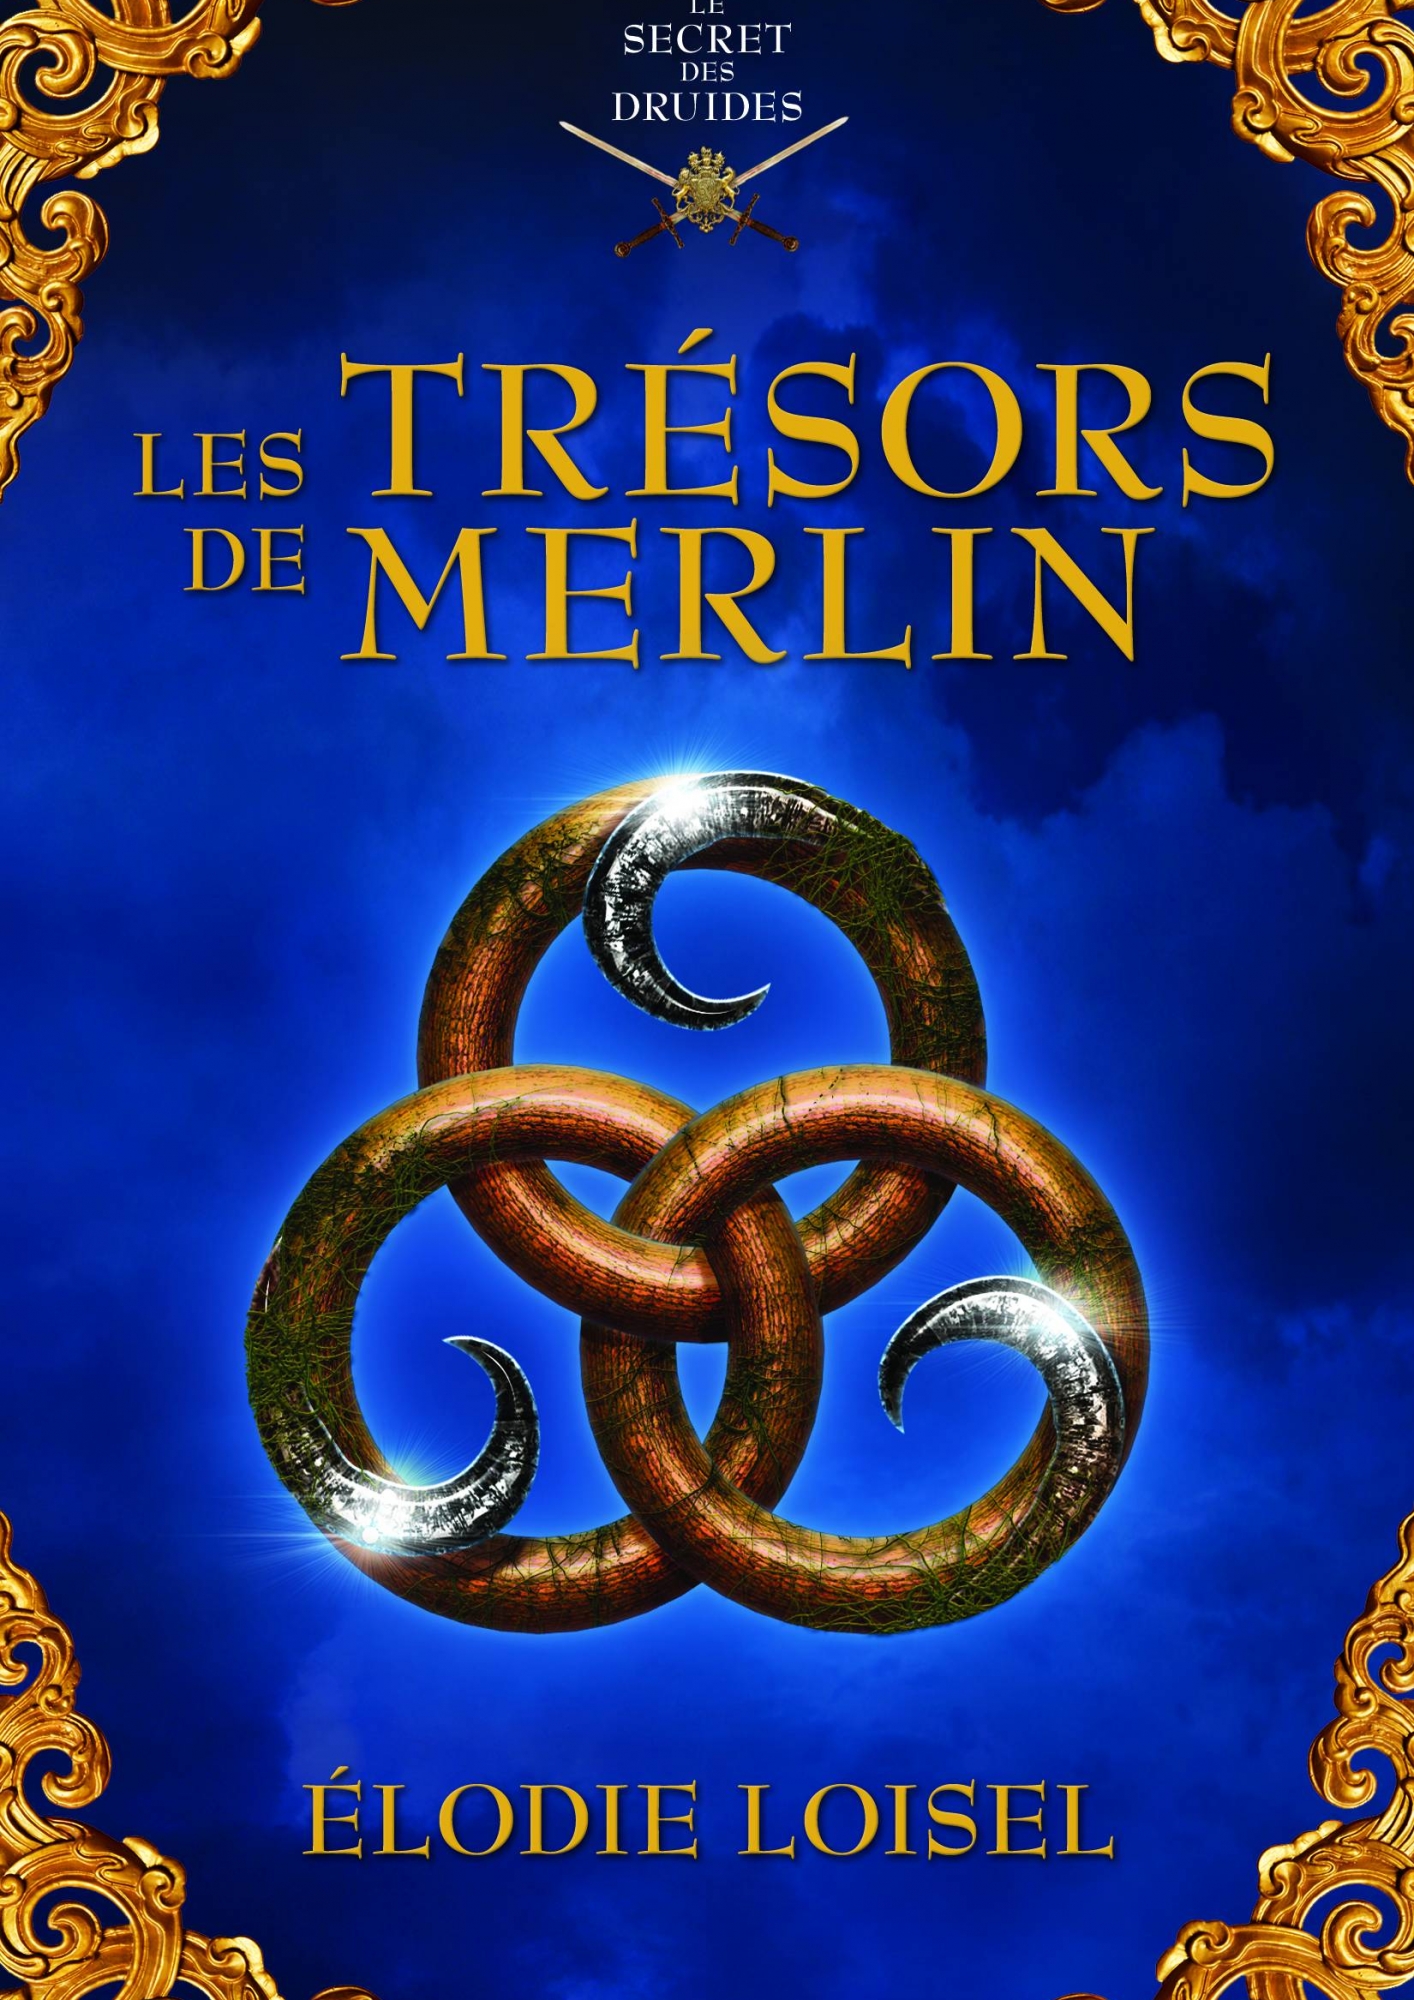 LE SECRET DES DRUIDES- T2 – Les trésors de Merlin